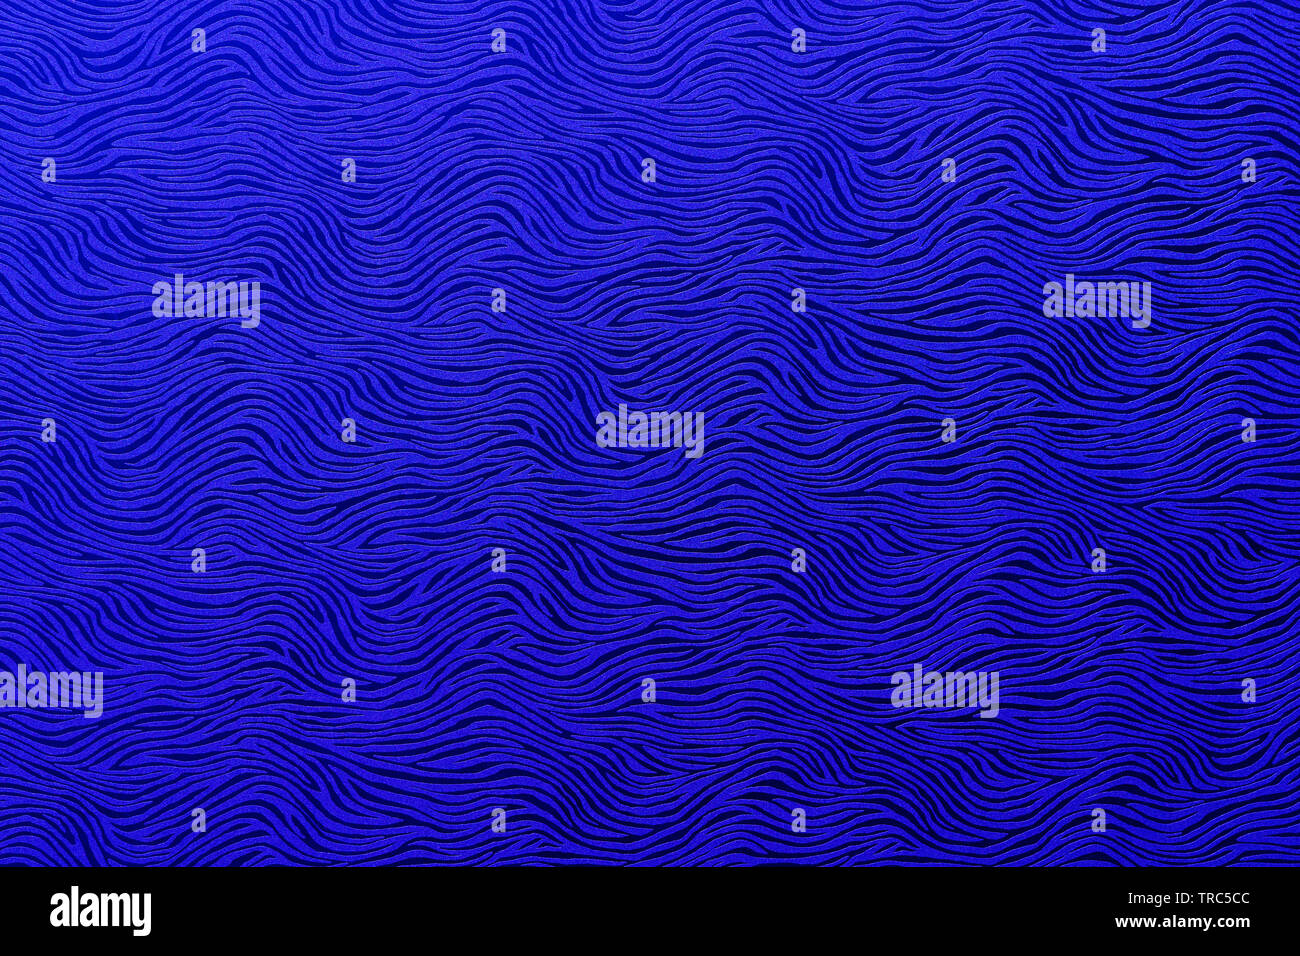 Abstract ondulata blu royal pattern Foto Stock